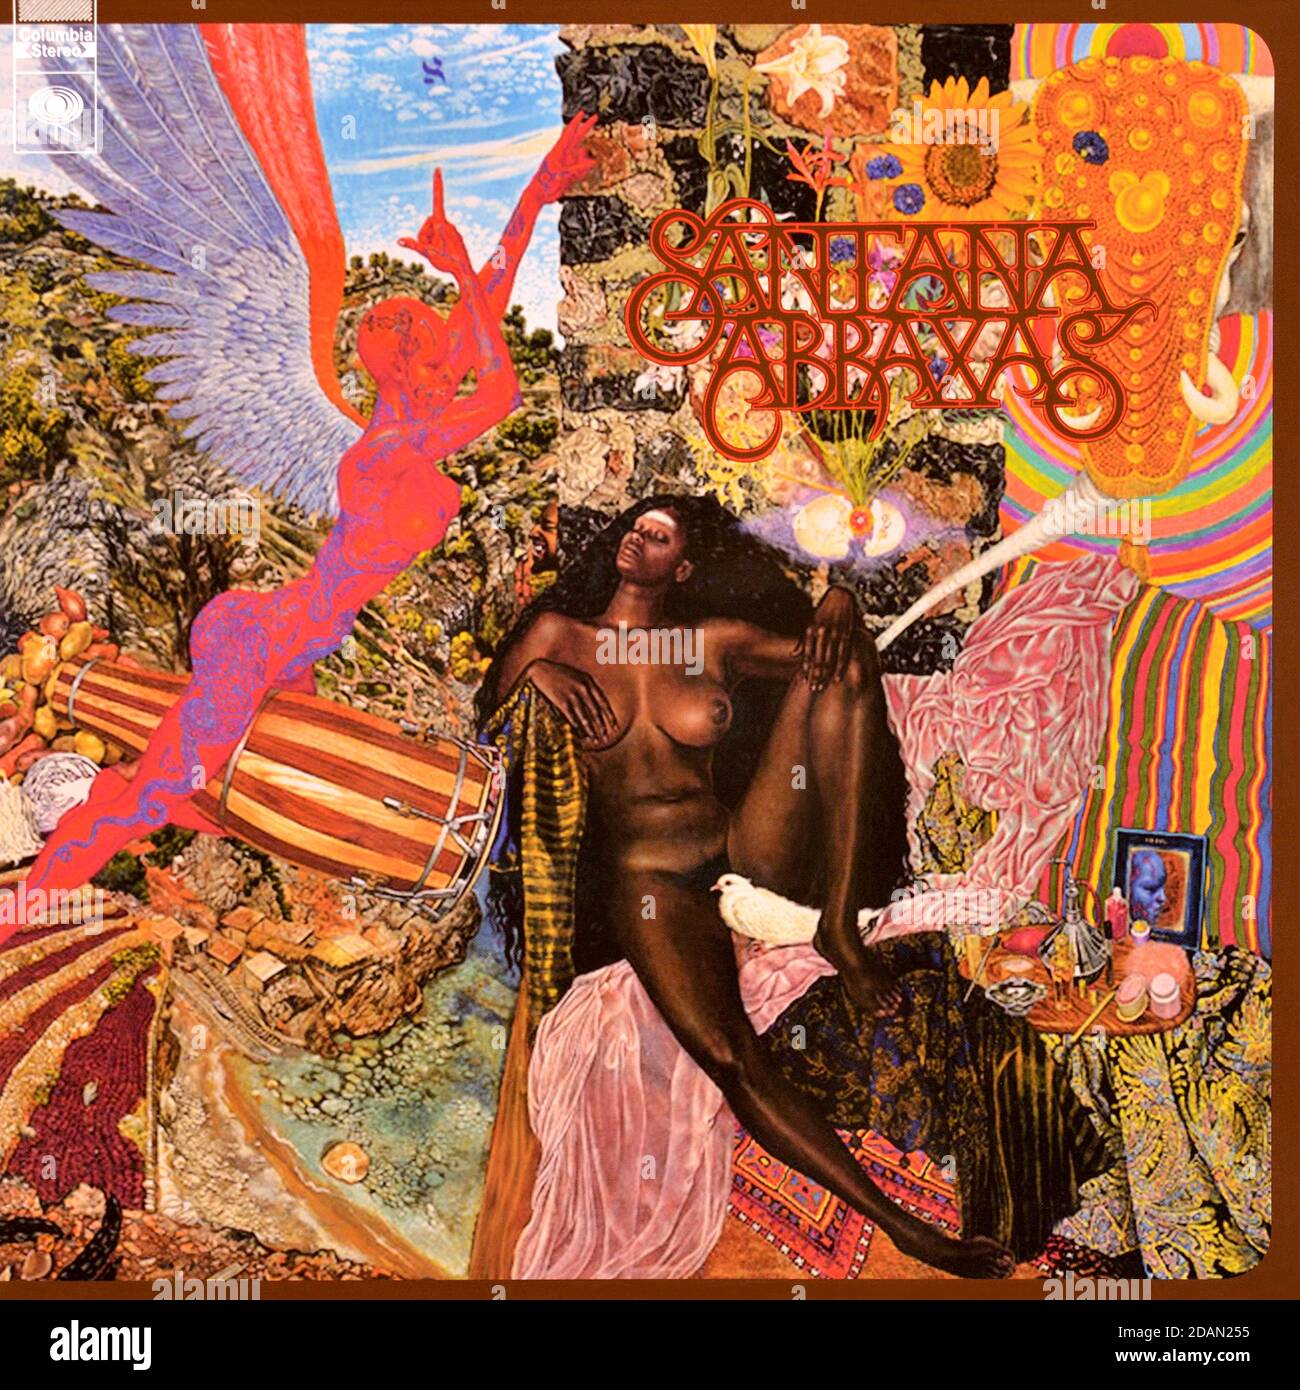 Santana .- Original Vinyl Album Cover - Abraxas - 1970 Stockfoto